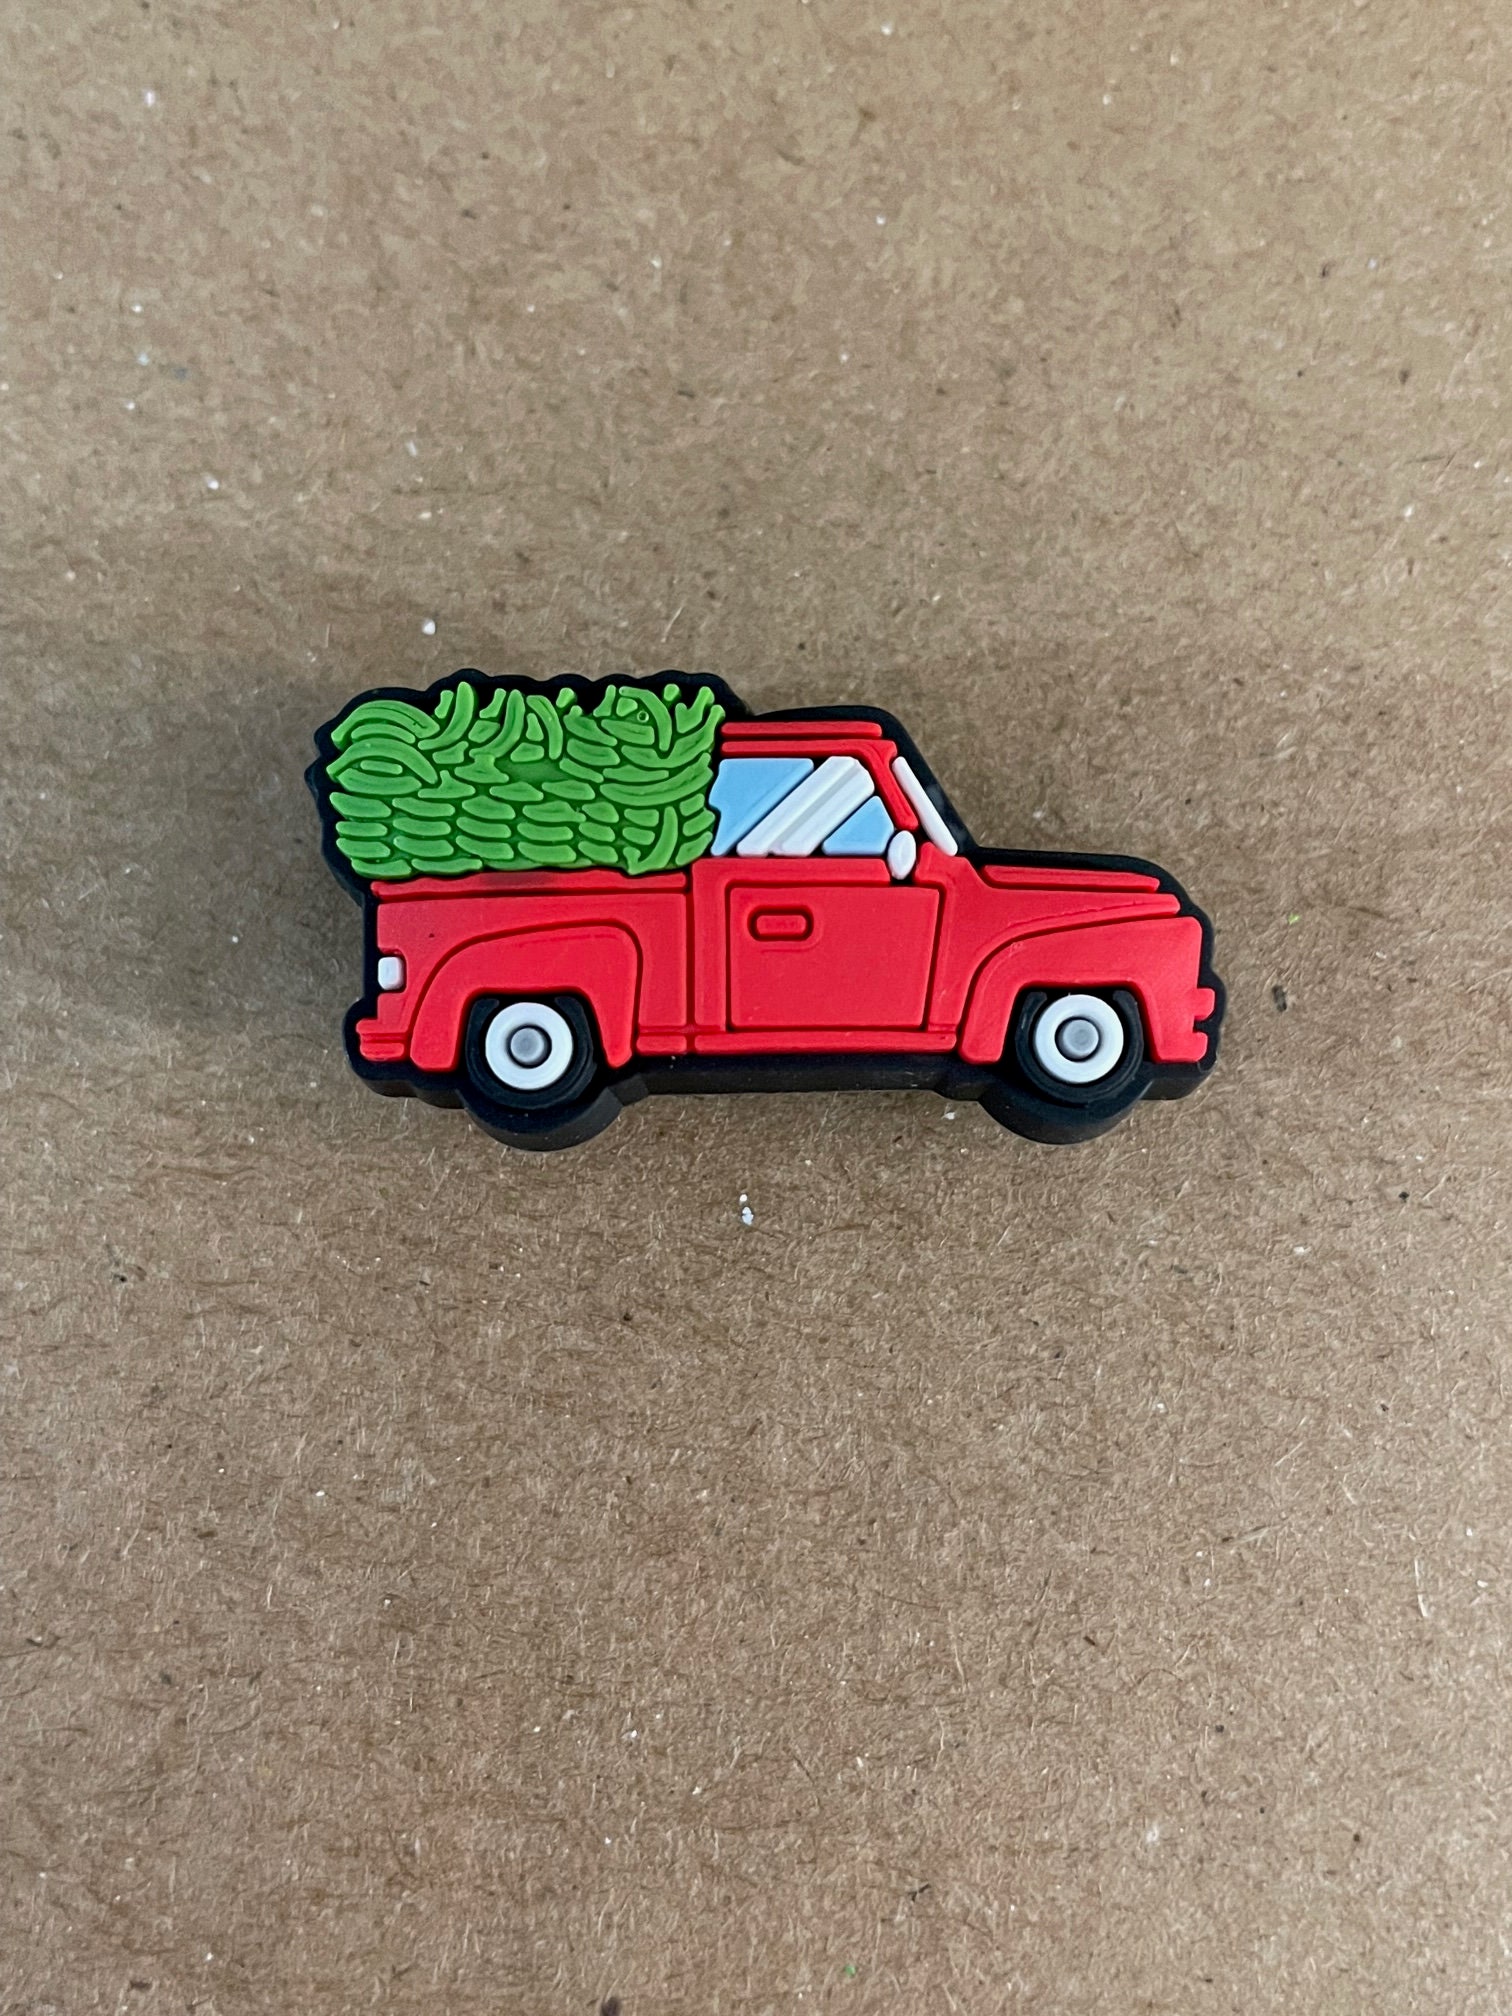 Pin on Truck Stuff & Ideas